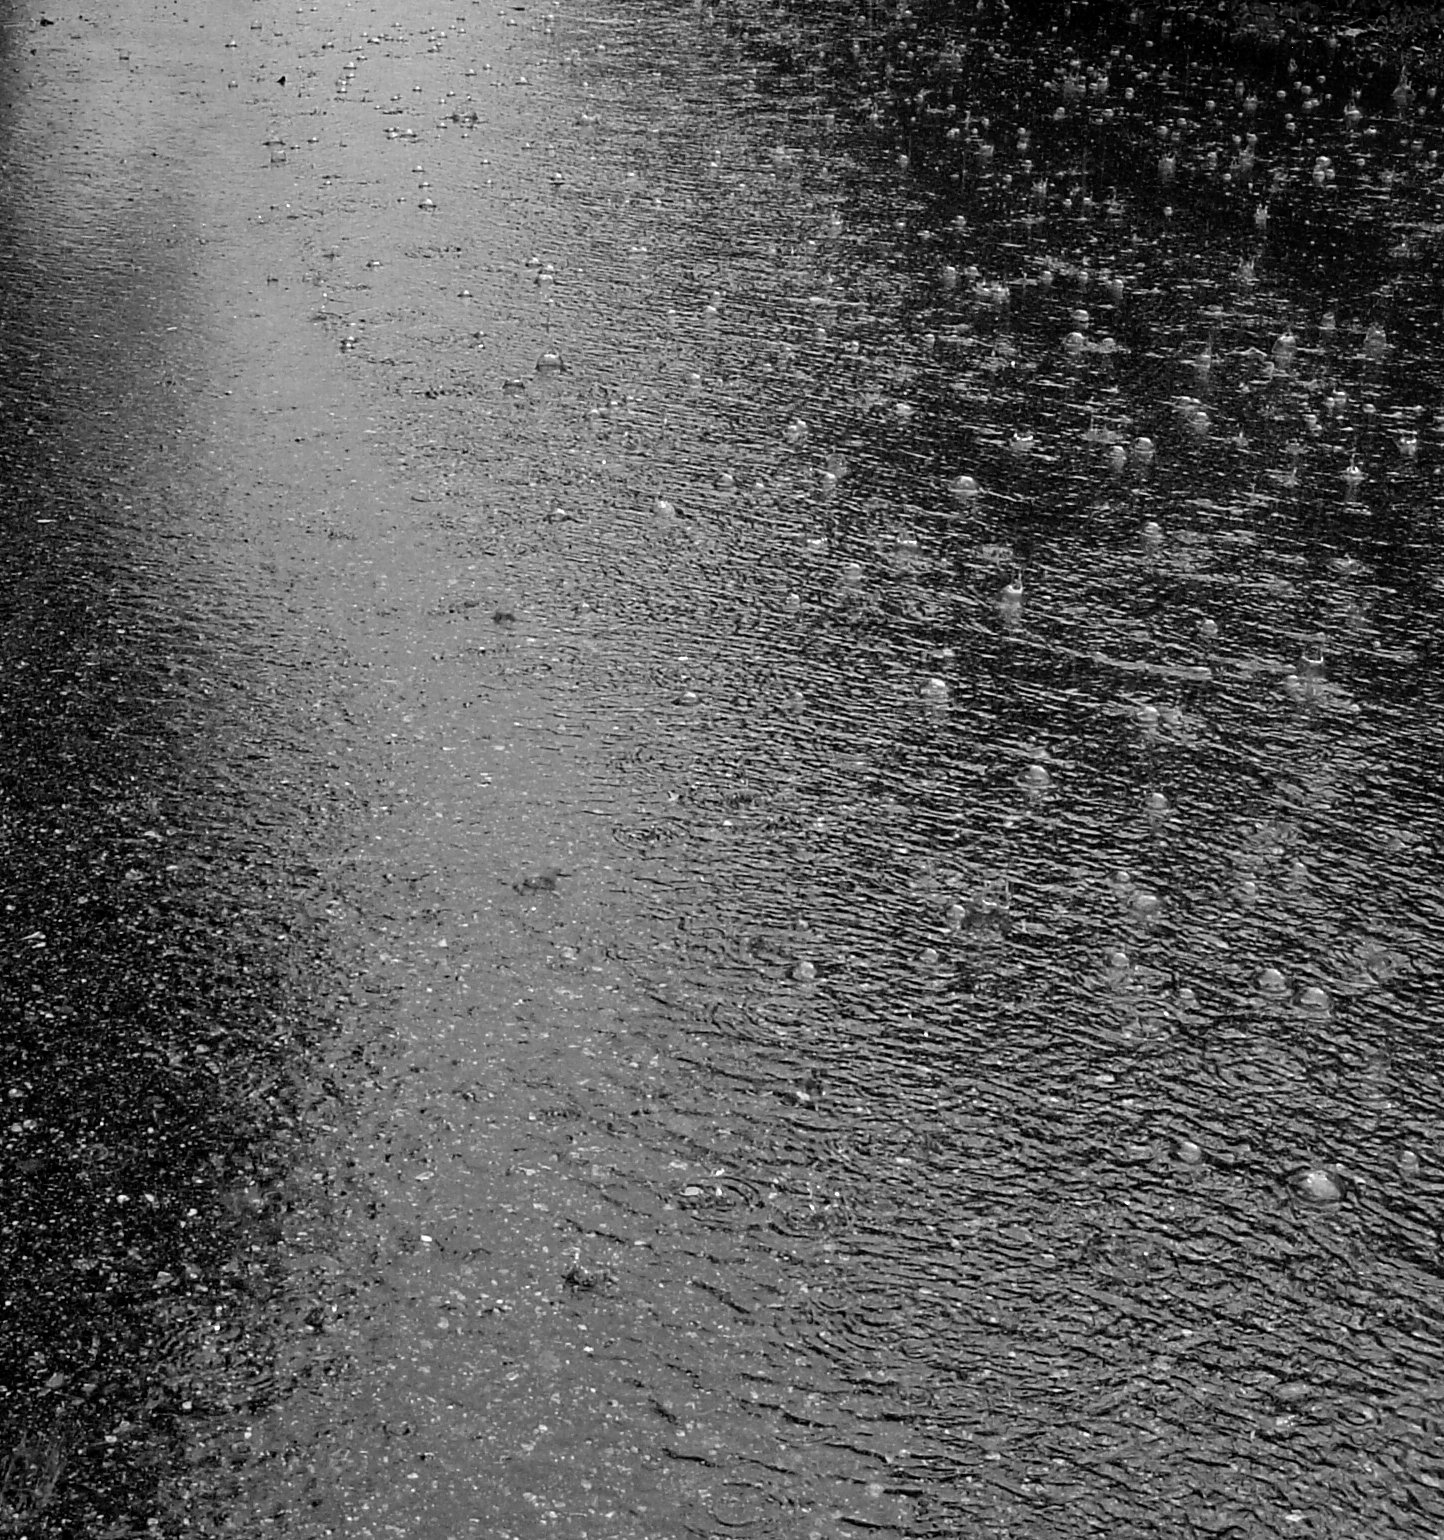 wet road texture